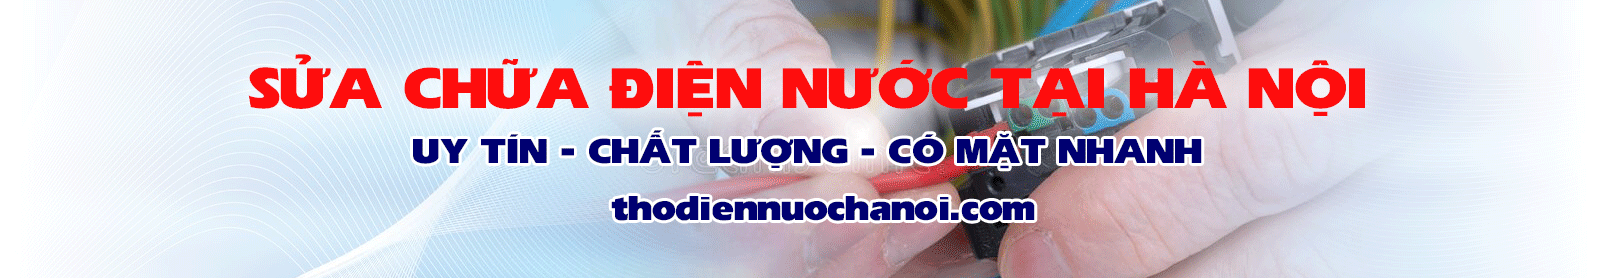 Thợ sửa điện nước Hà Nội